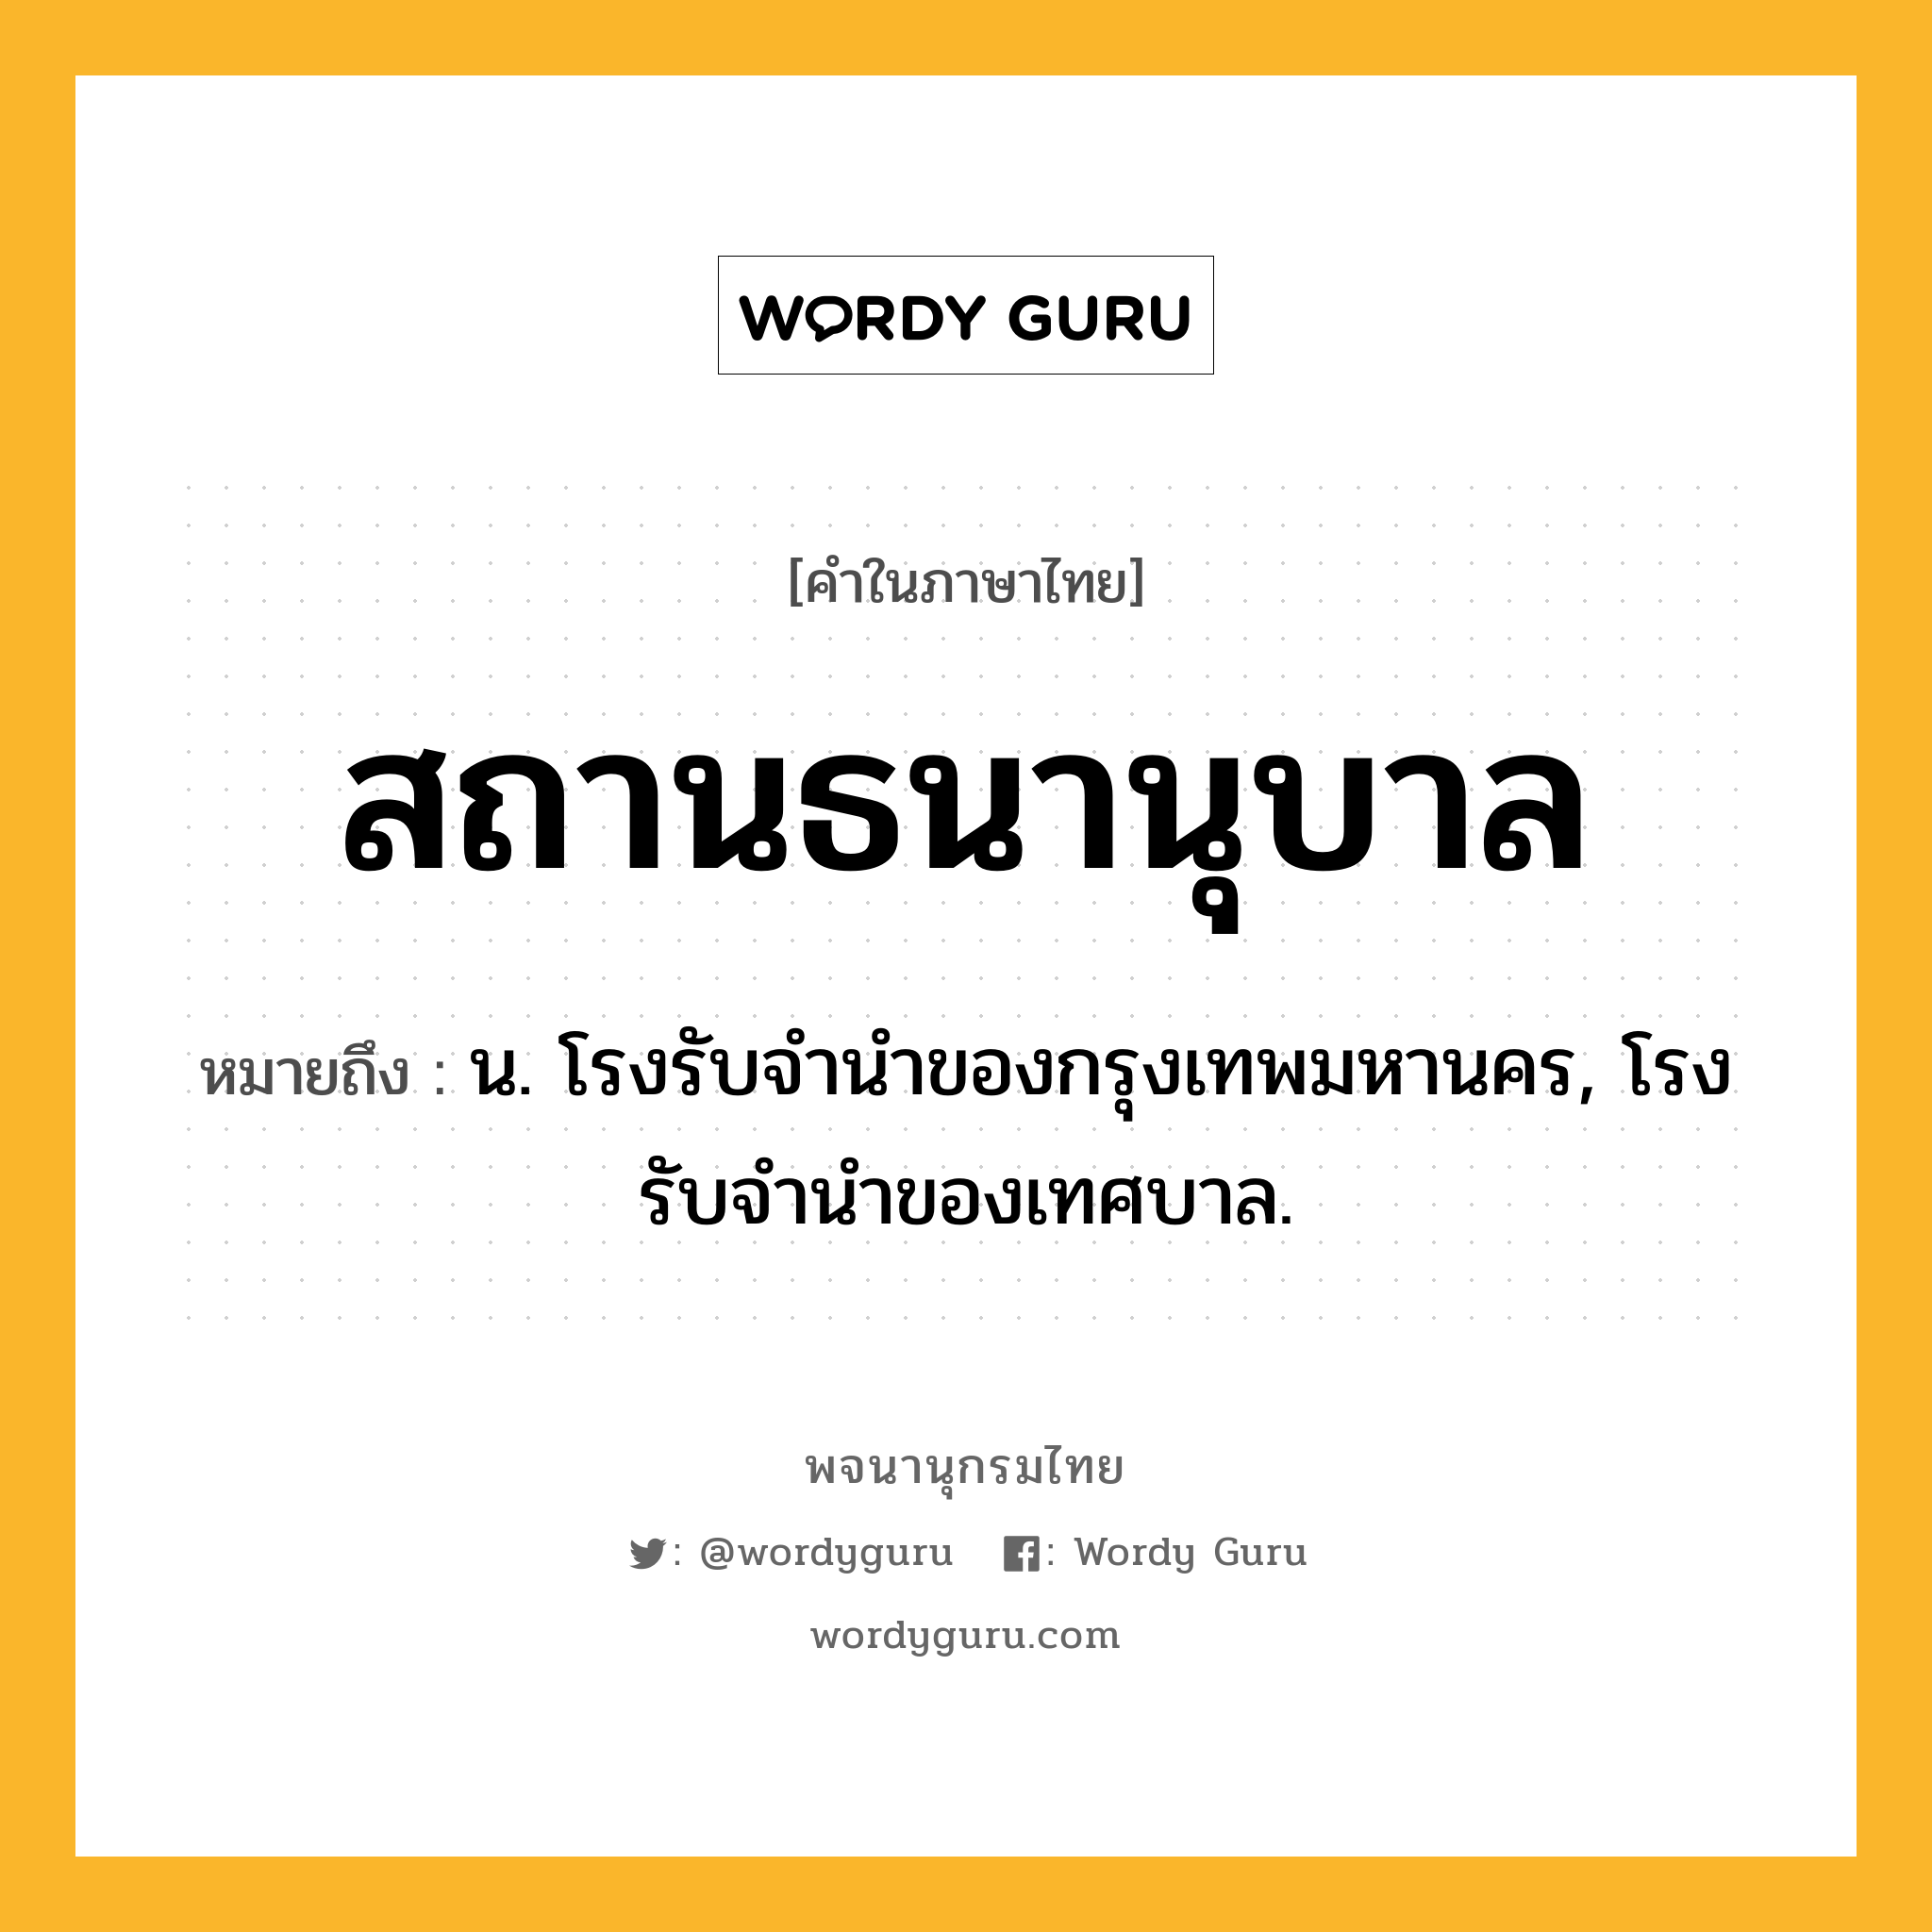 สถานธนานุบาล หมายถึงอะไร?, คำในภาษาไทย สถานธนานุบาล หมายถึง น. โรงรับจำนำของกรุงเทพมหานคร, โรงรับจำนำของเทศบาล.